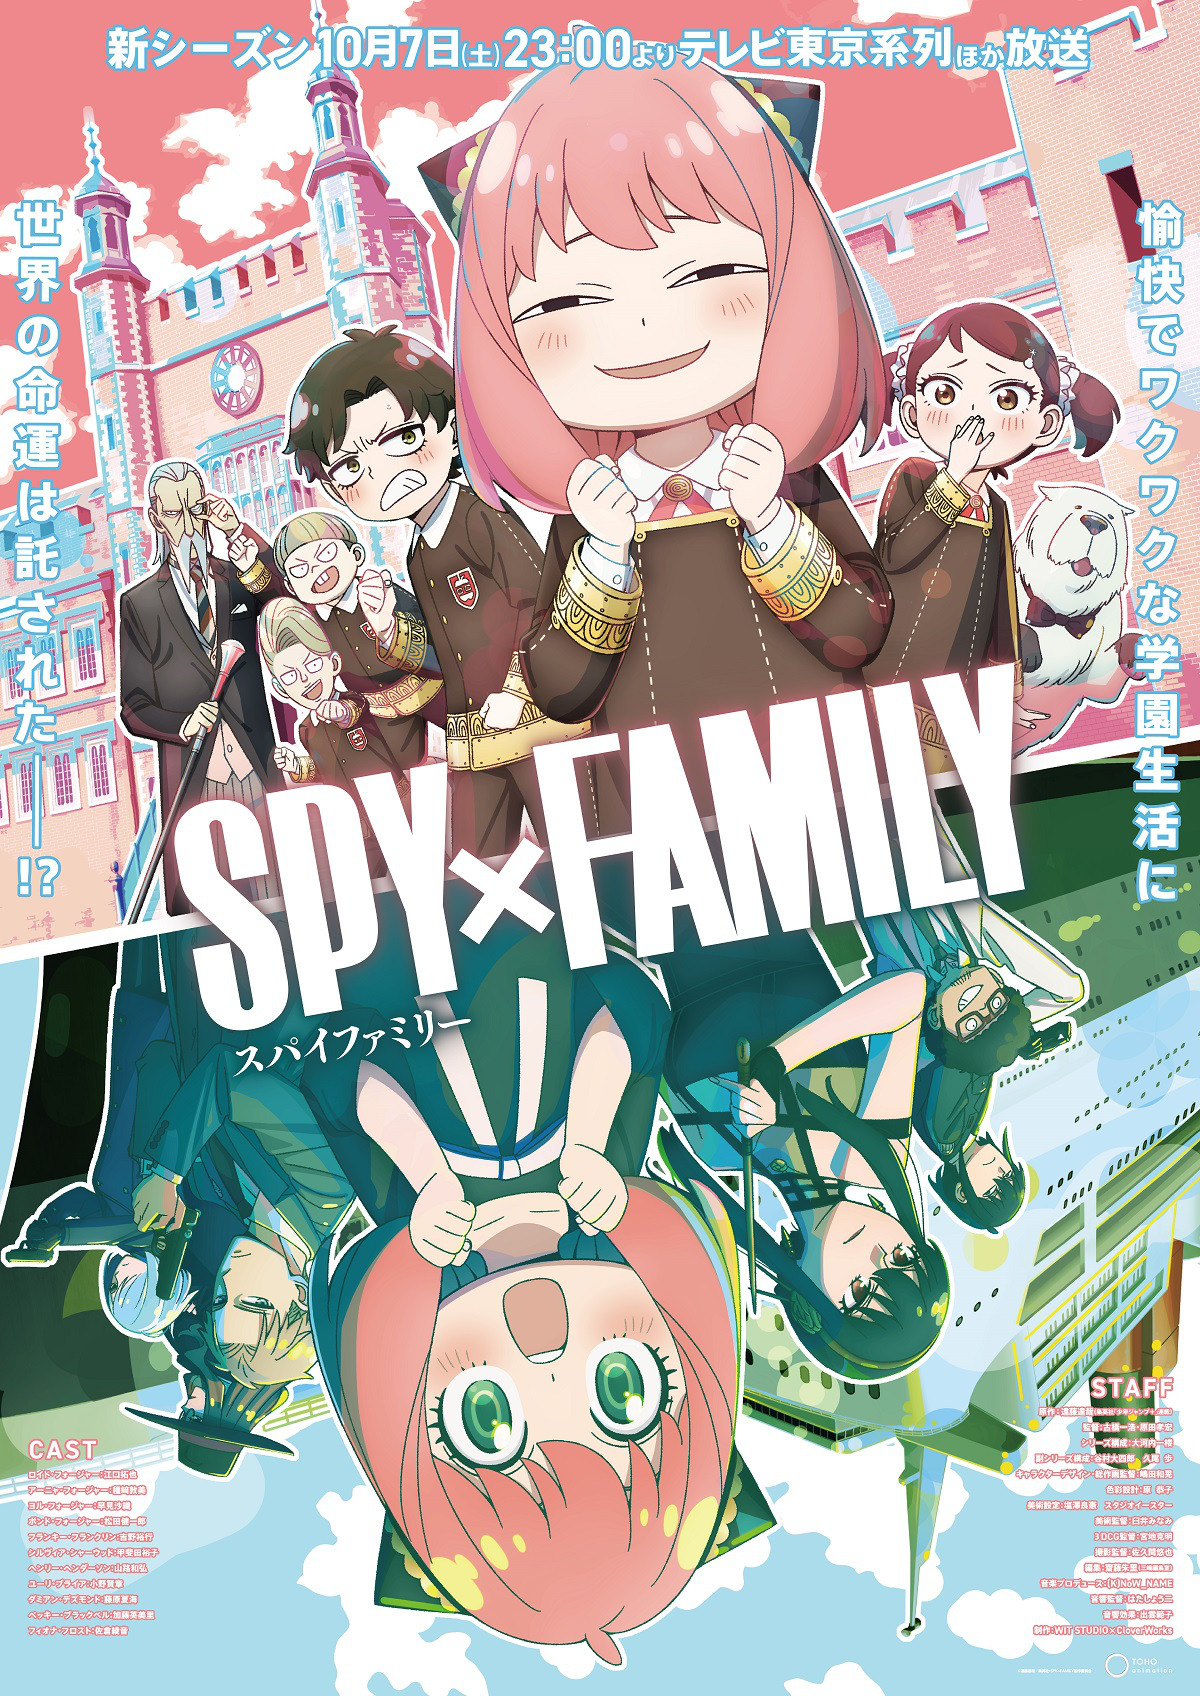 Spy x Family revela primer vistazo al episodio 2 de la segunda temporada